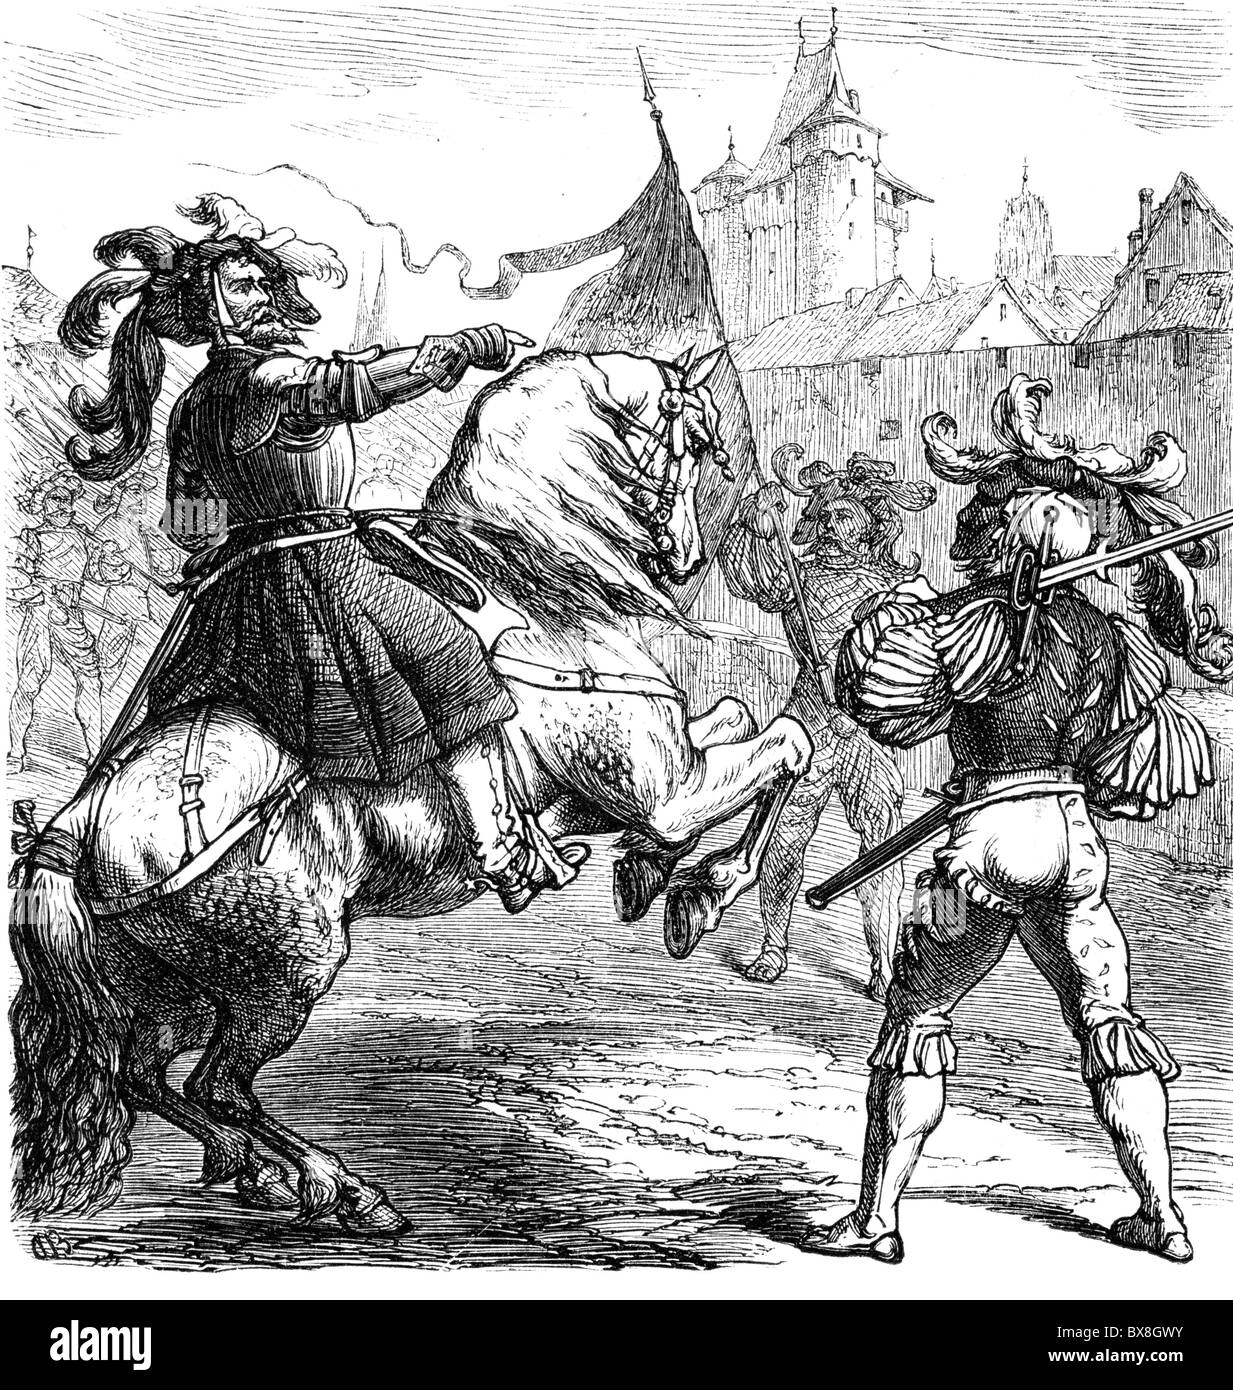 Frundsberg, Georg von, 24.9.1473 - 30.8.1528, German landsknecht leader, full length, on horseback, with landsknechts, wood engraving, 19th century, Stock Photo